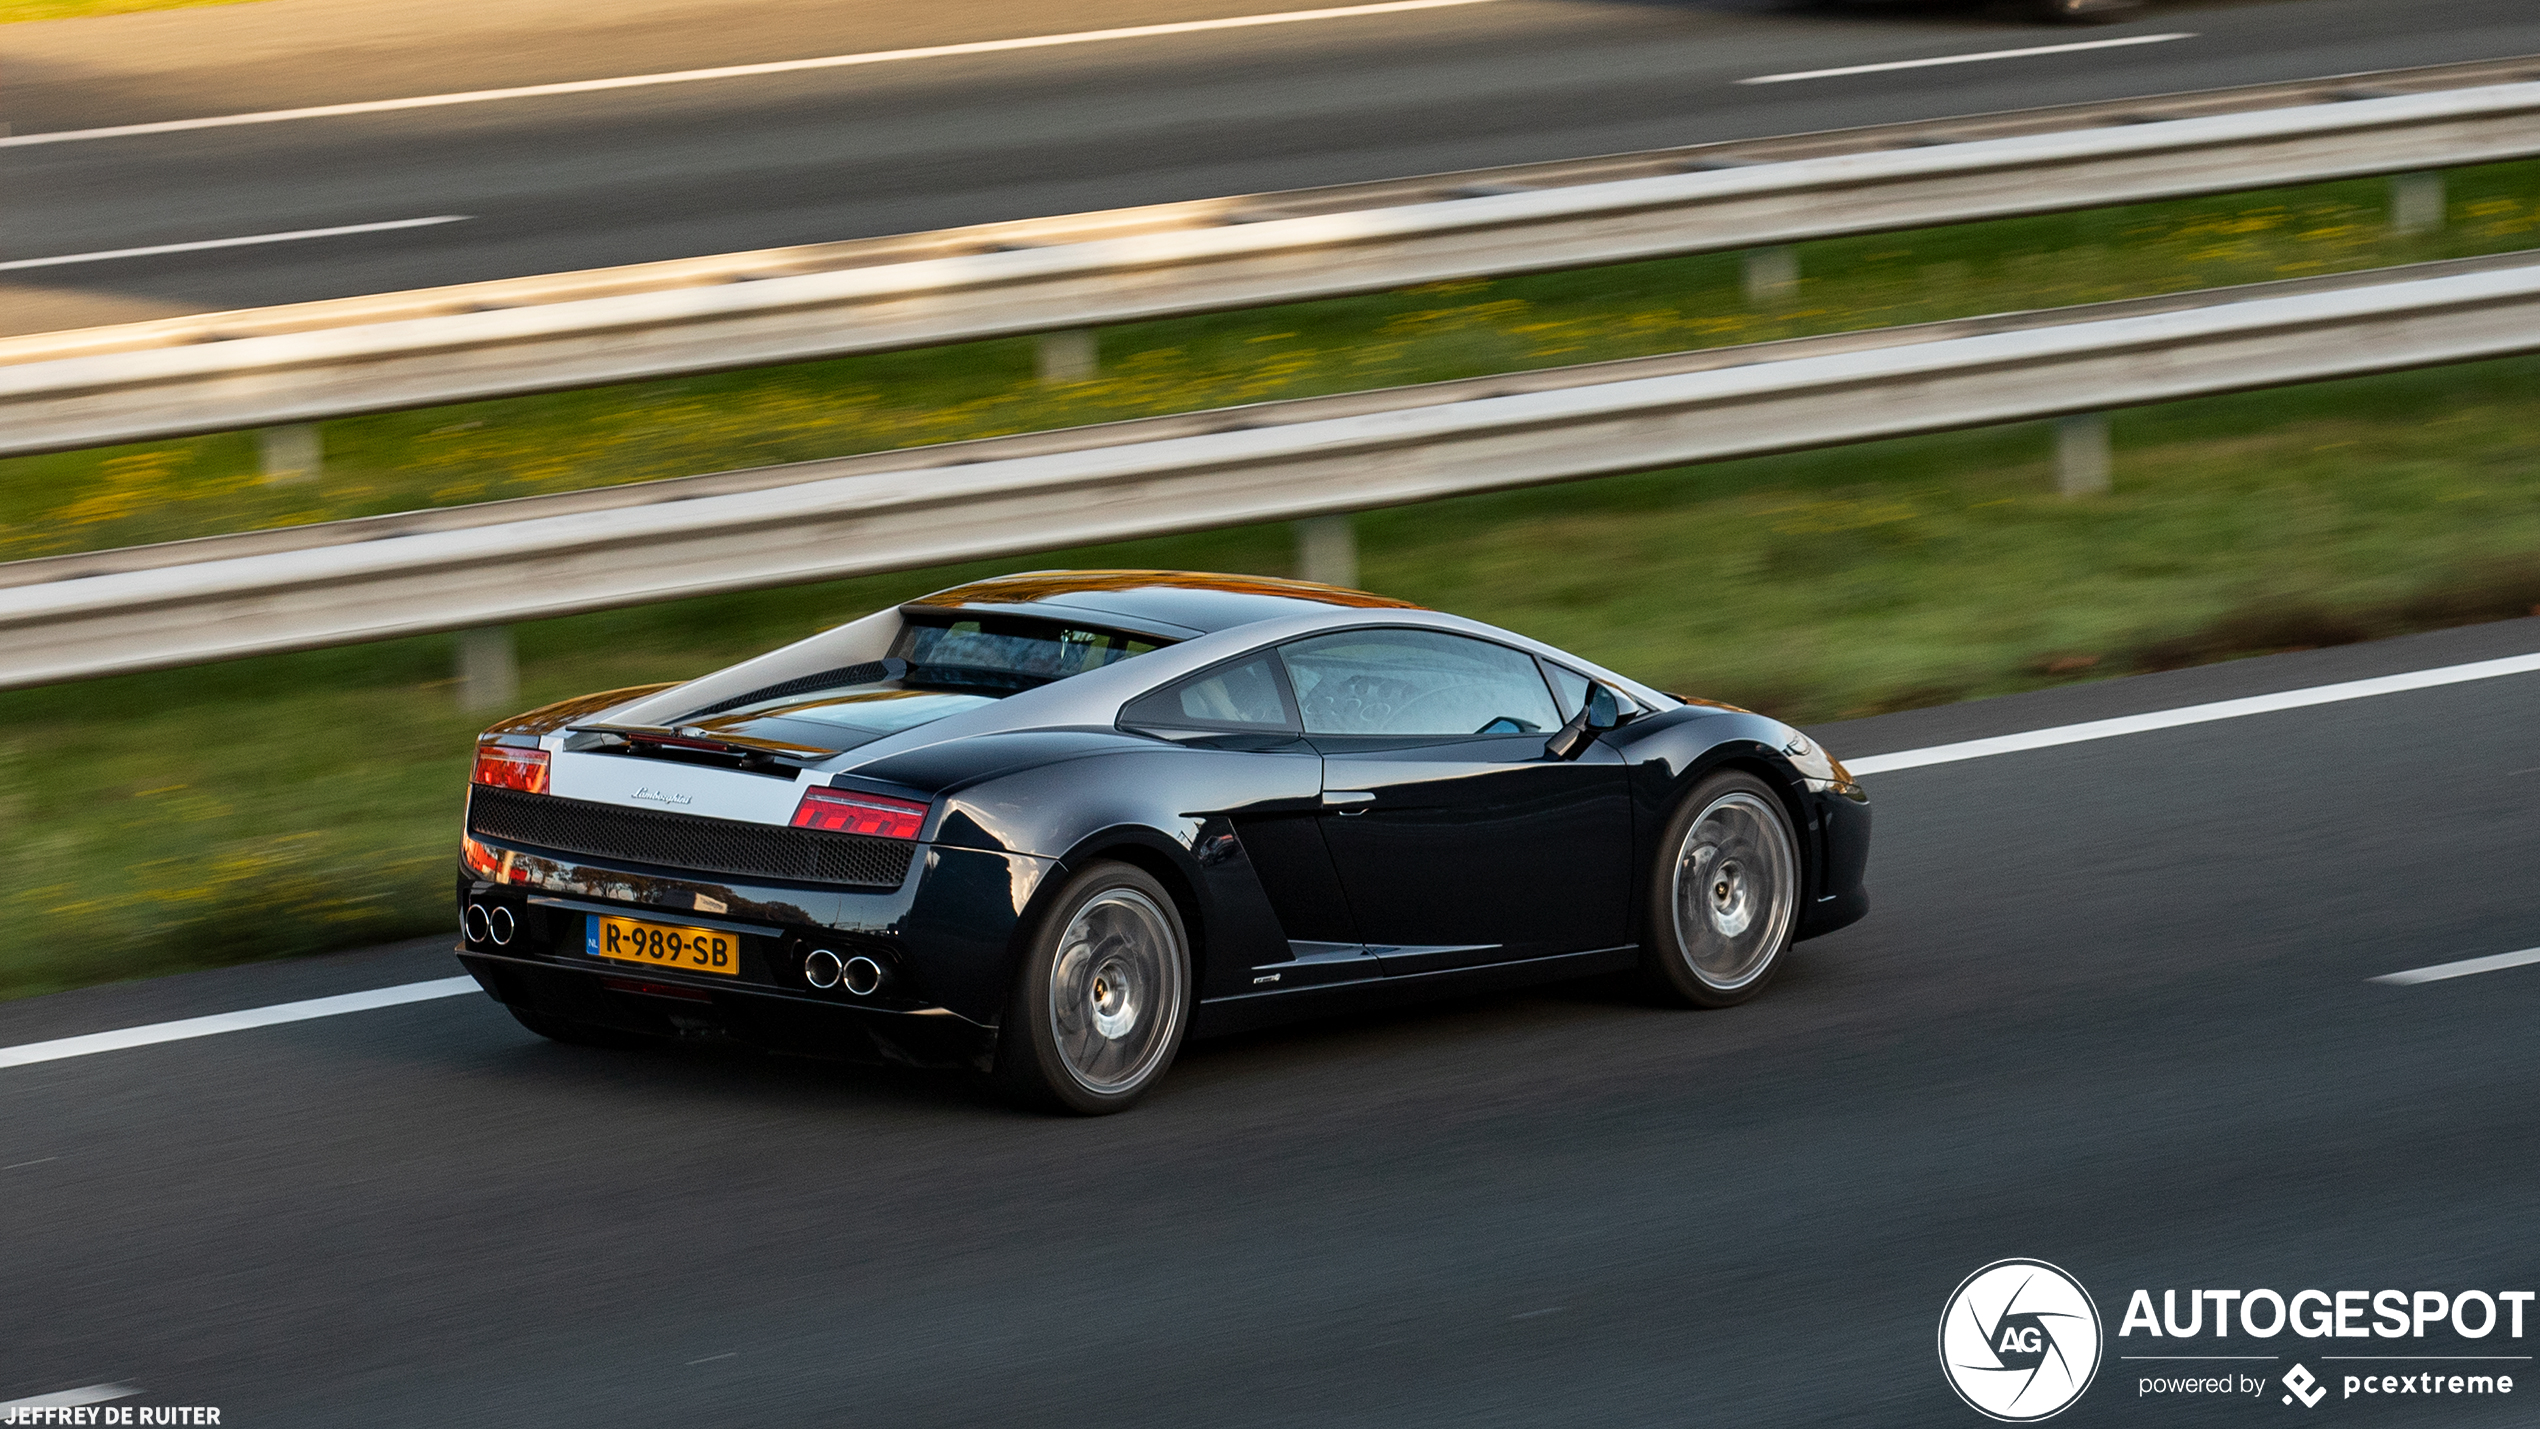 Dit is de meest exclusieve Lamborghini Gallardo van Nederland